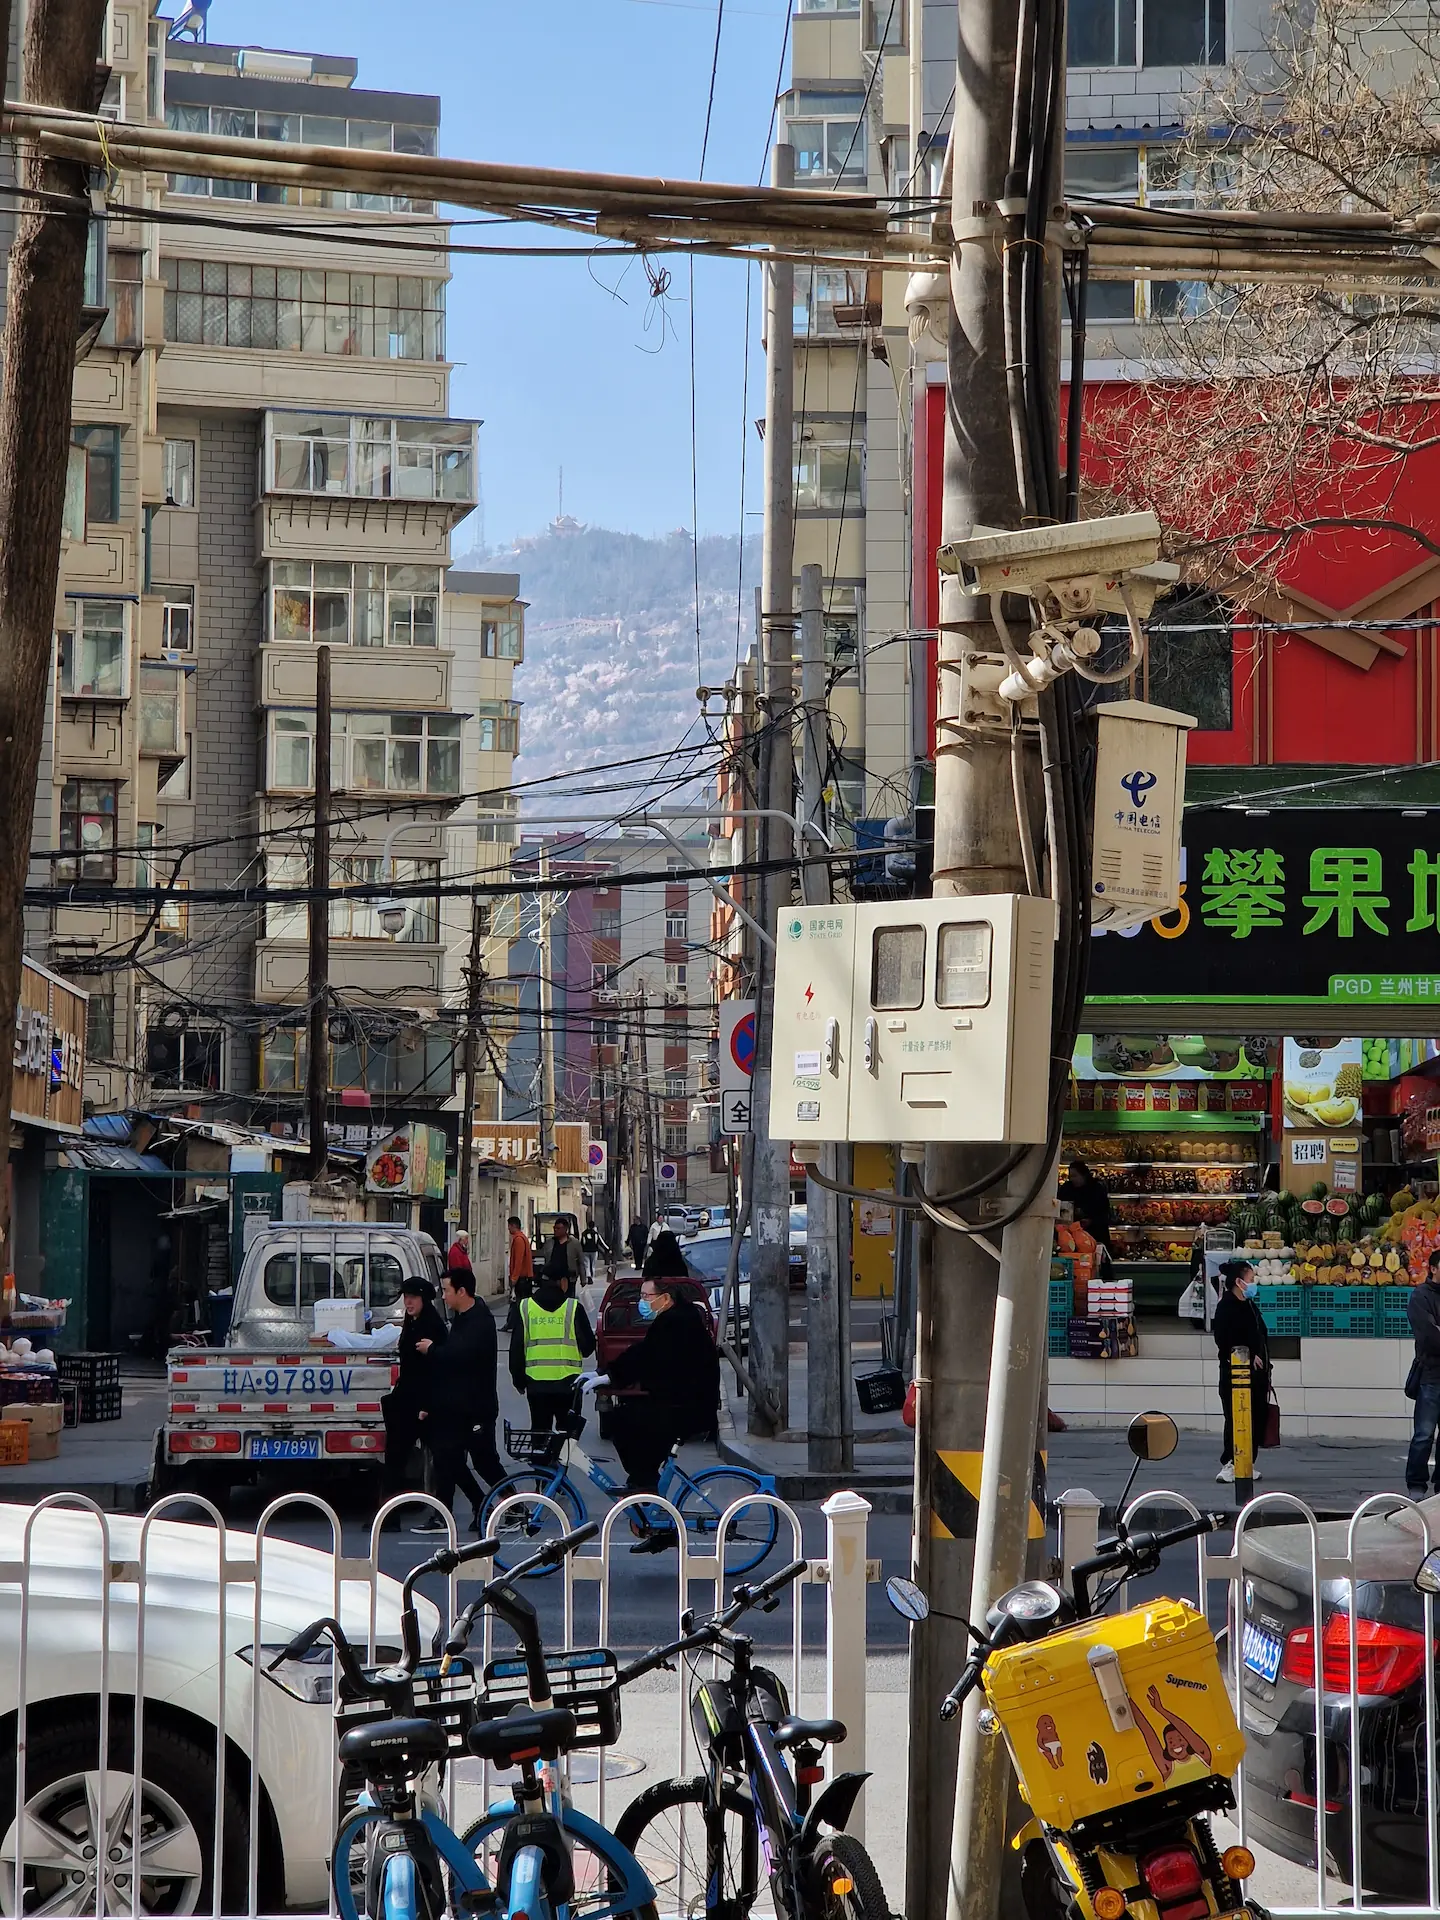 Vue d'une petite rue chaotique, petits bâtiments, vélos, fils électriques, piétons, magasins, une montagne en fond